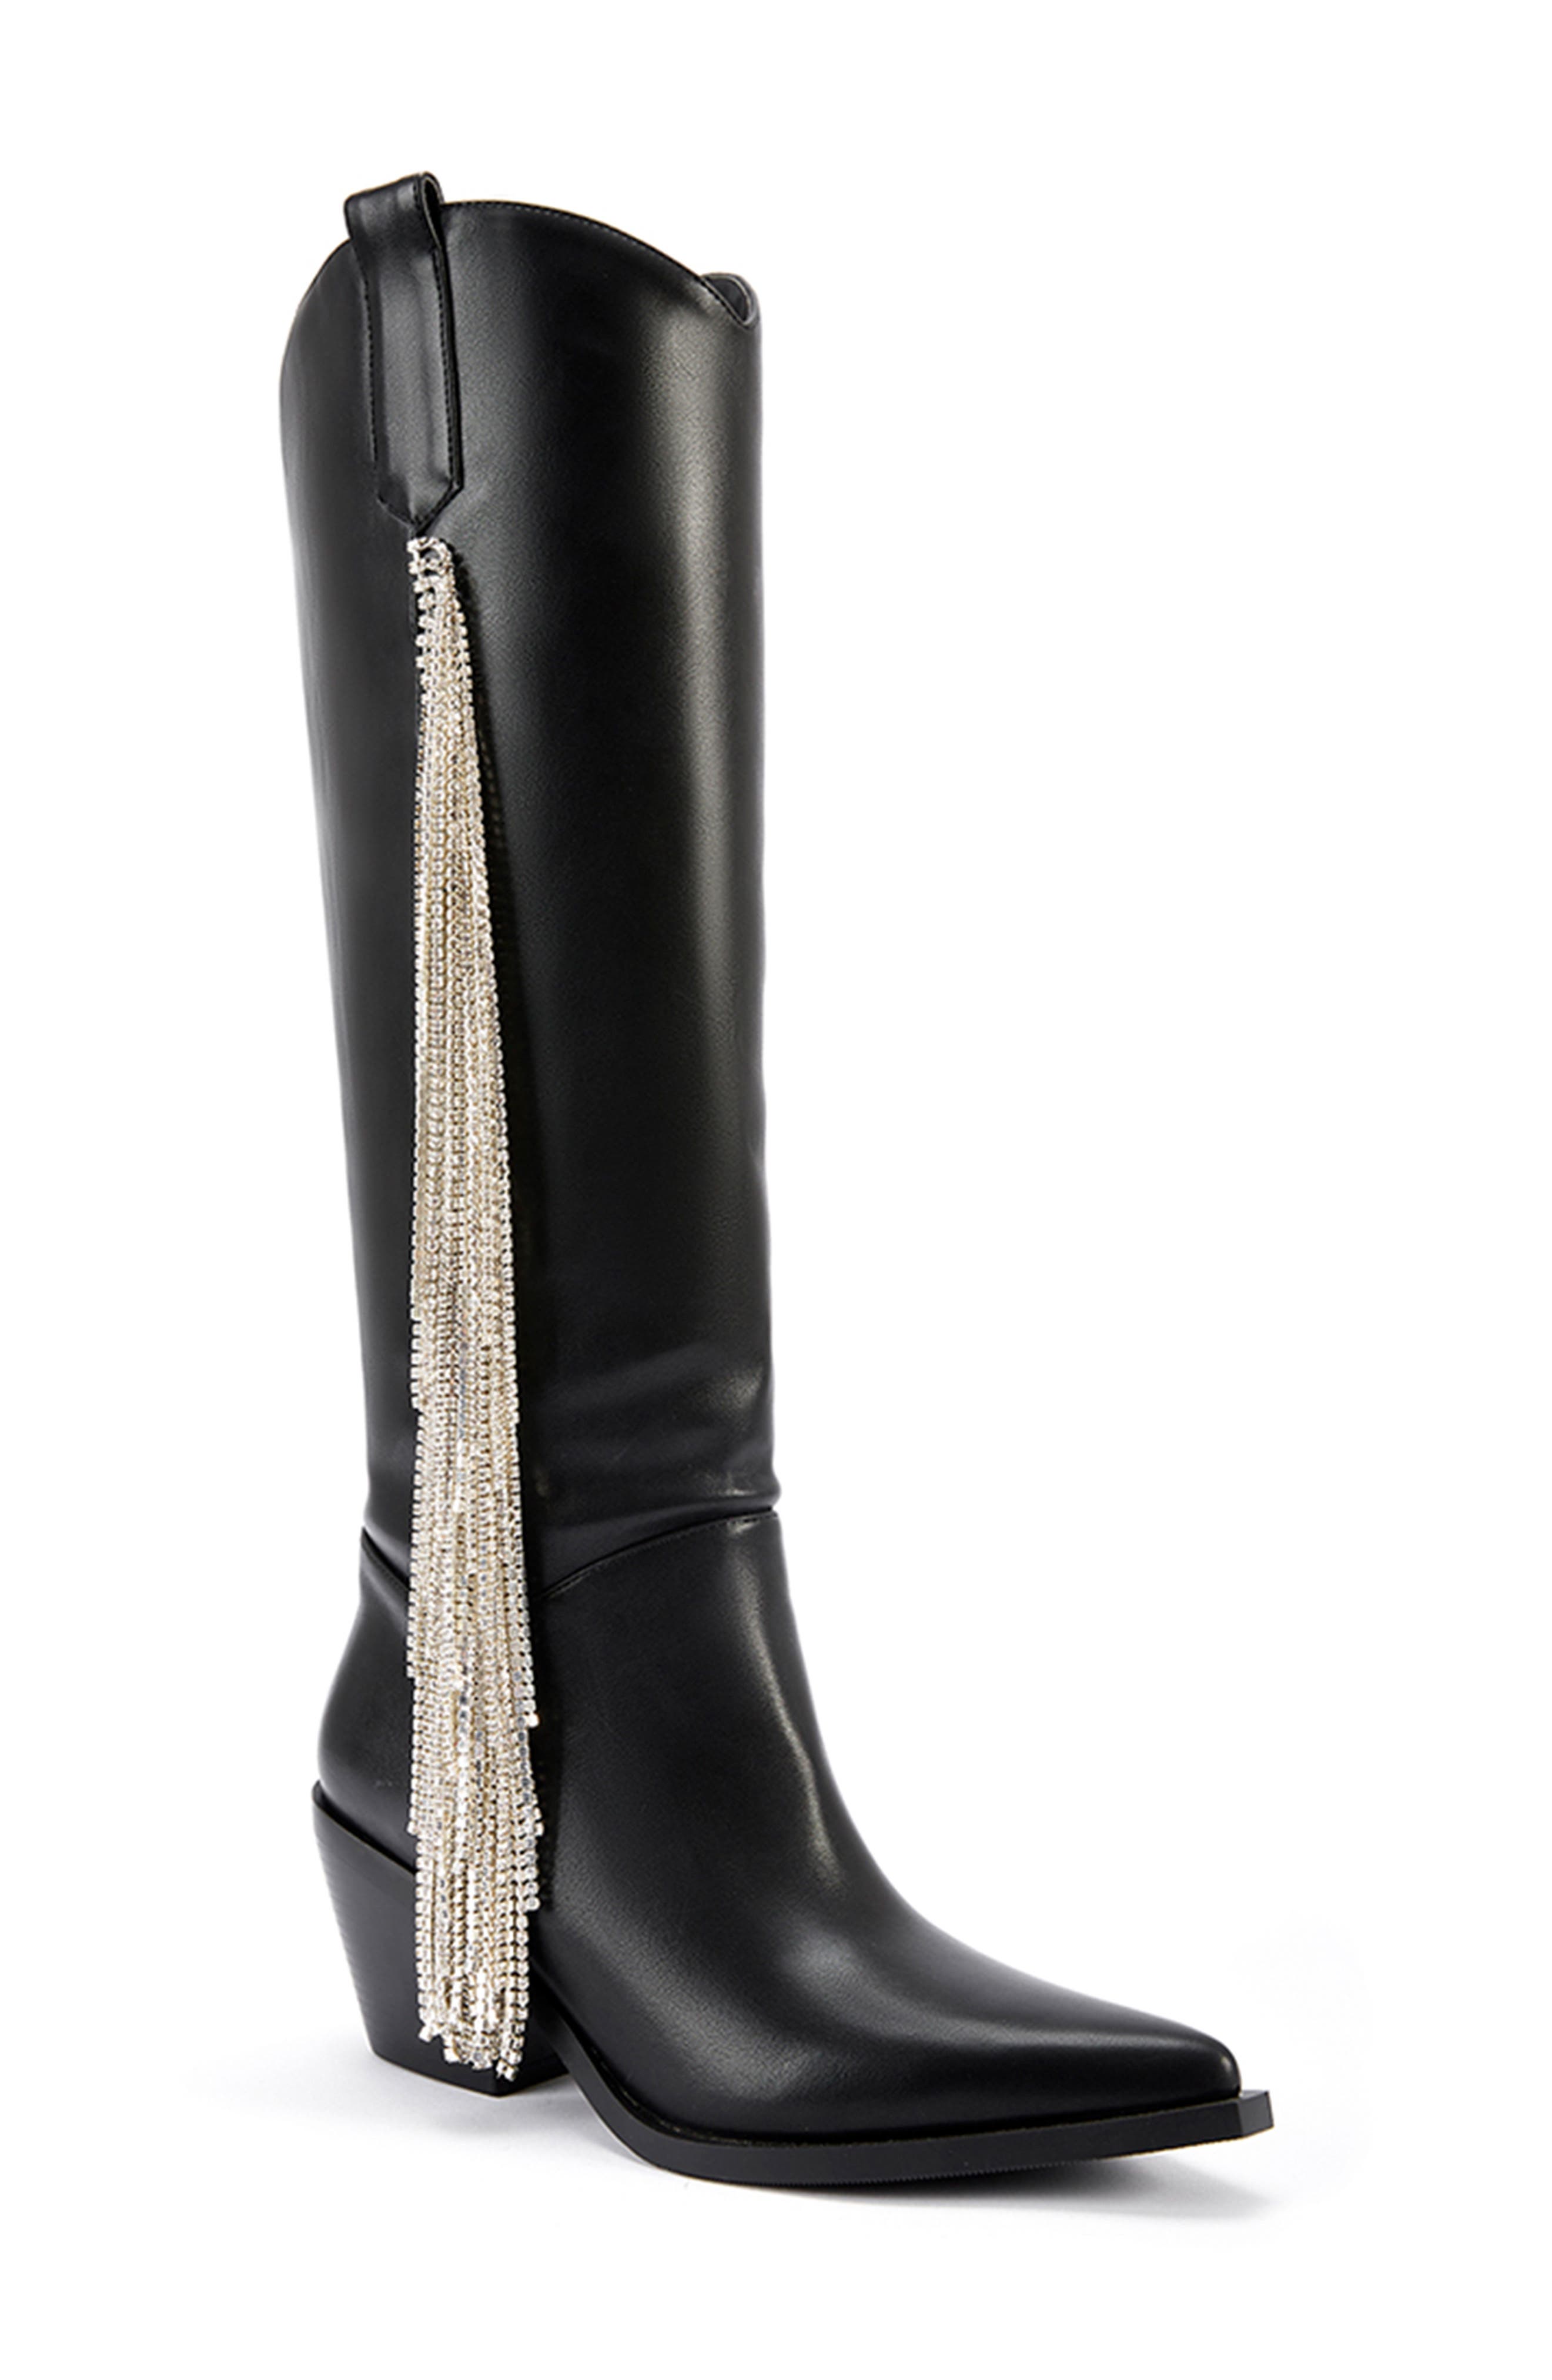 Florens bow-embellished knee-high boots - Black